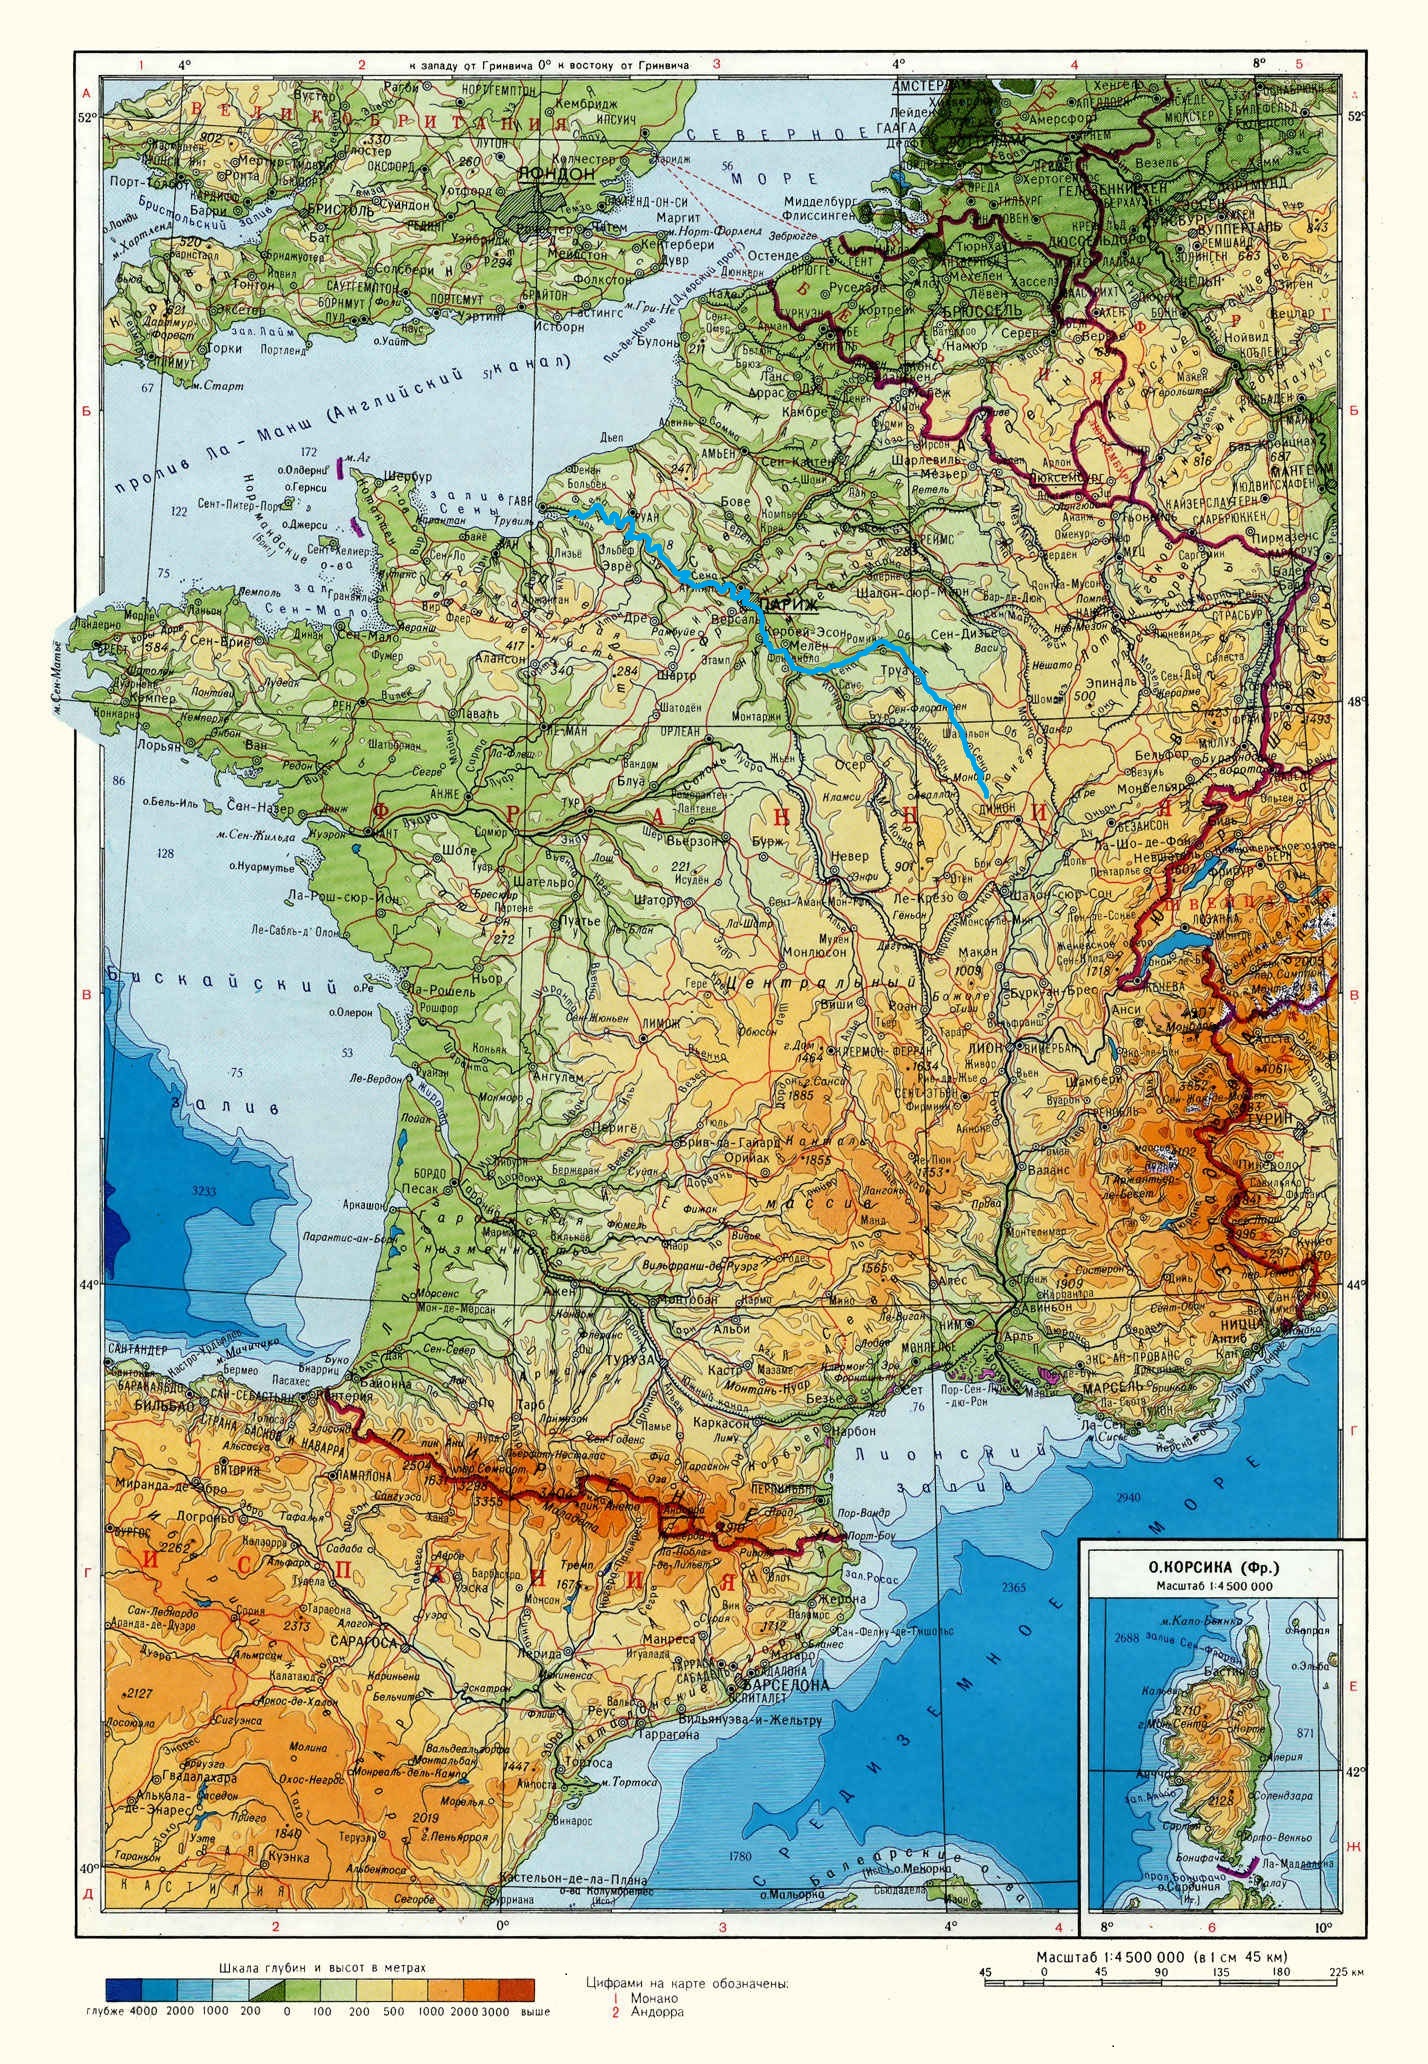 Река Сена (Seine) на карте